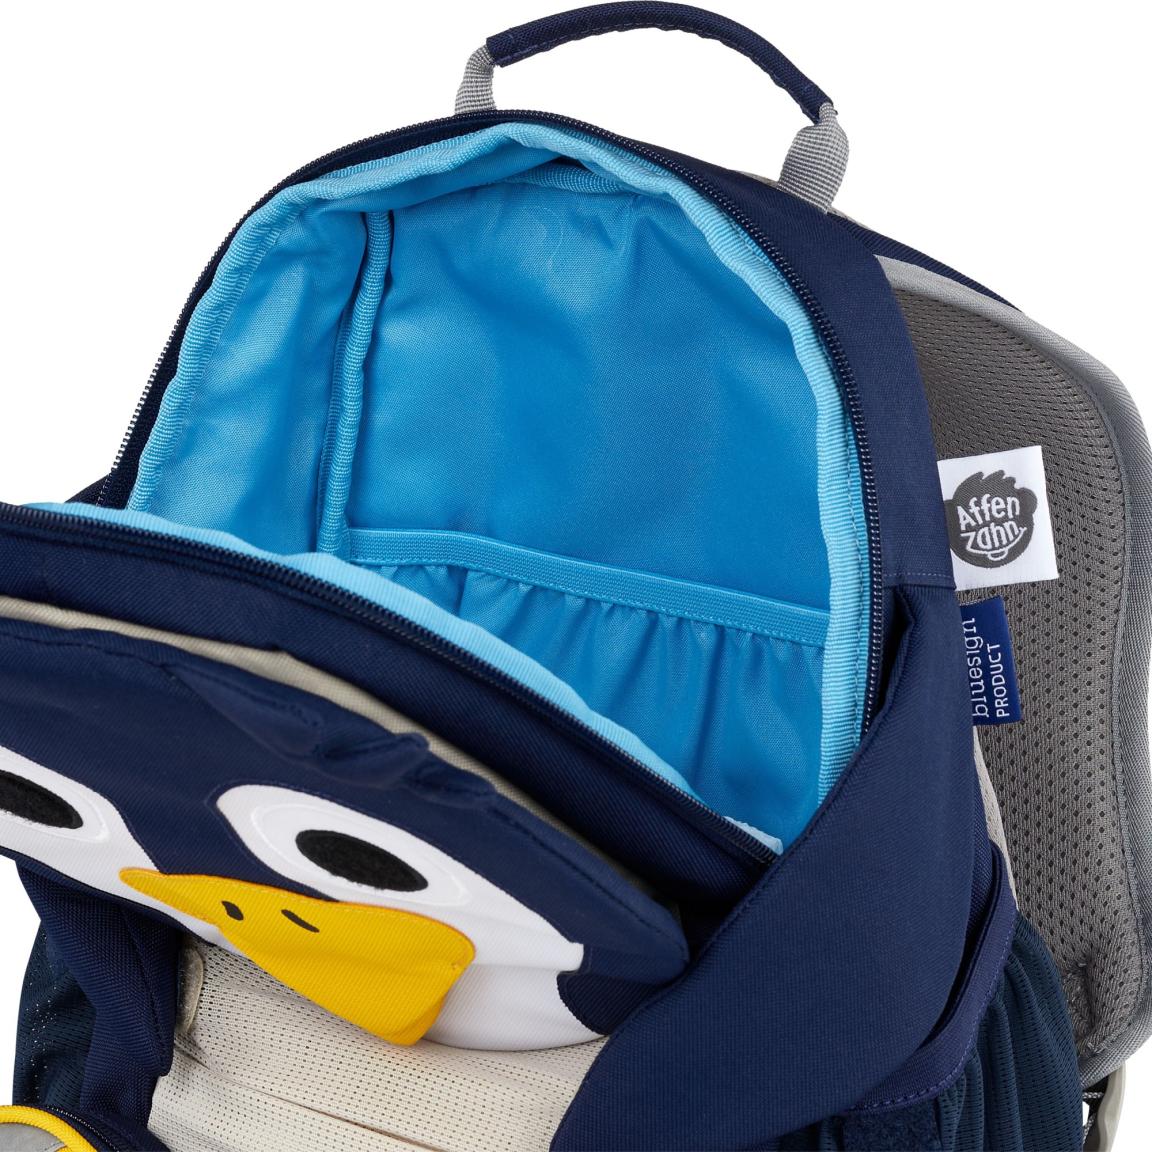 Backpack für den Kindergarten Affenzahn dunkelblau Pinguin Namensschild